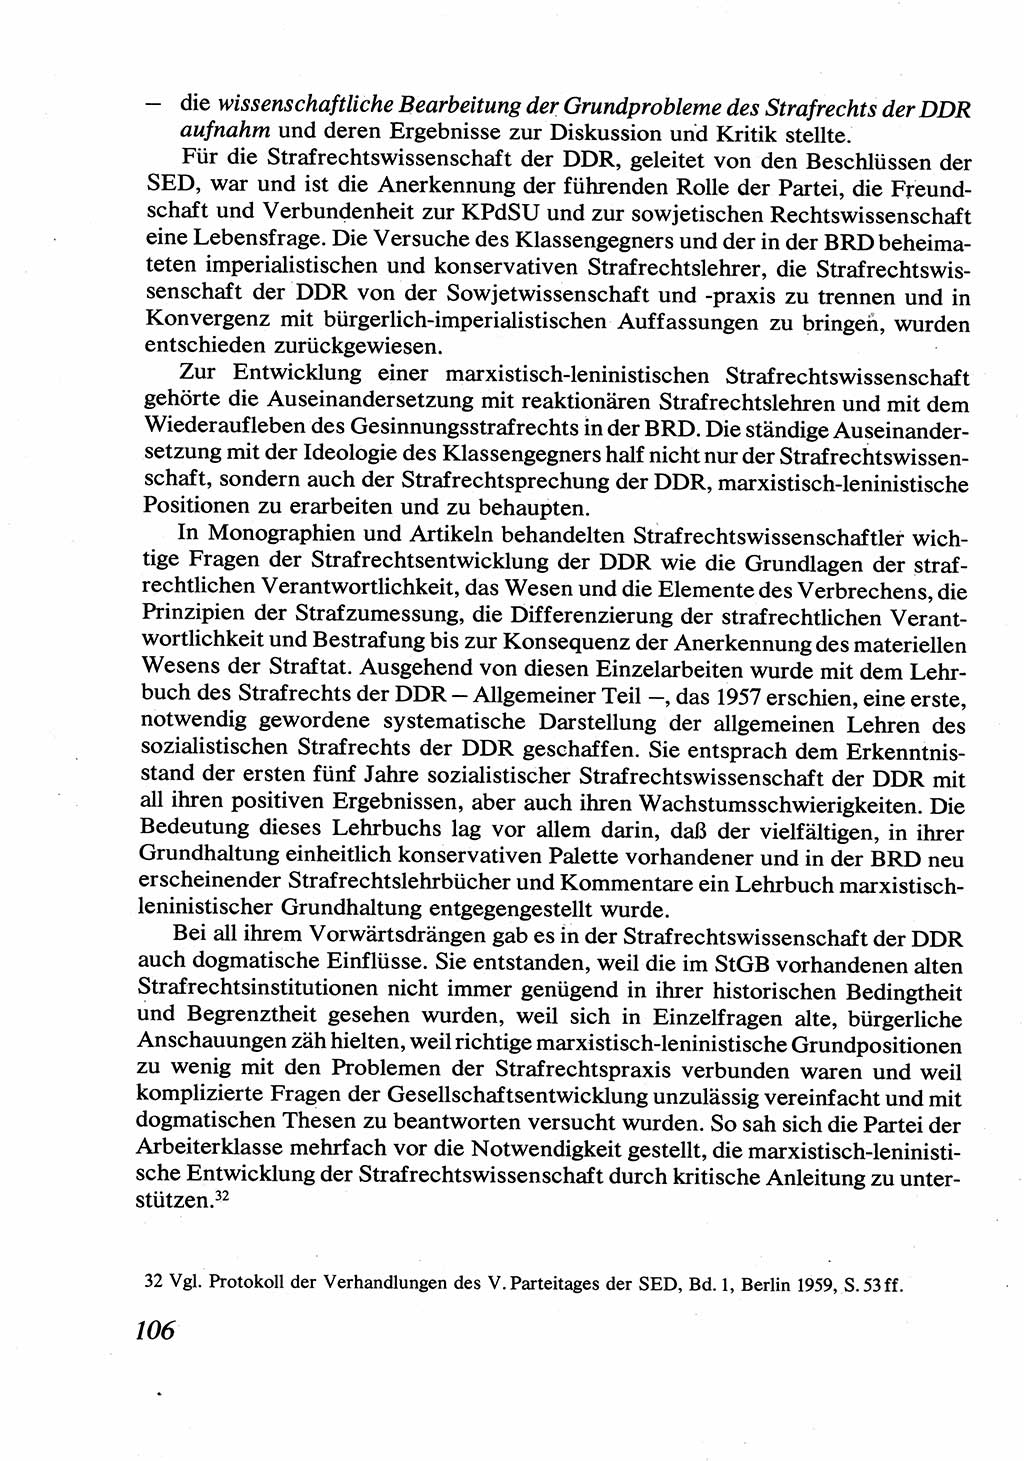 Strafrecht [Deutsche Demokratische Republik (DDR)], Allgemeiner Teil, Lehrbuch 1976, Seite 106 (Strafr. DDR AT Lb. 1976, S. 106)